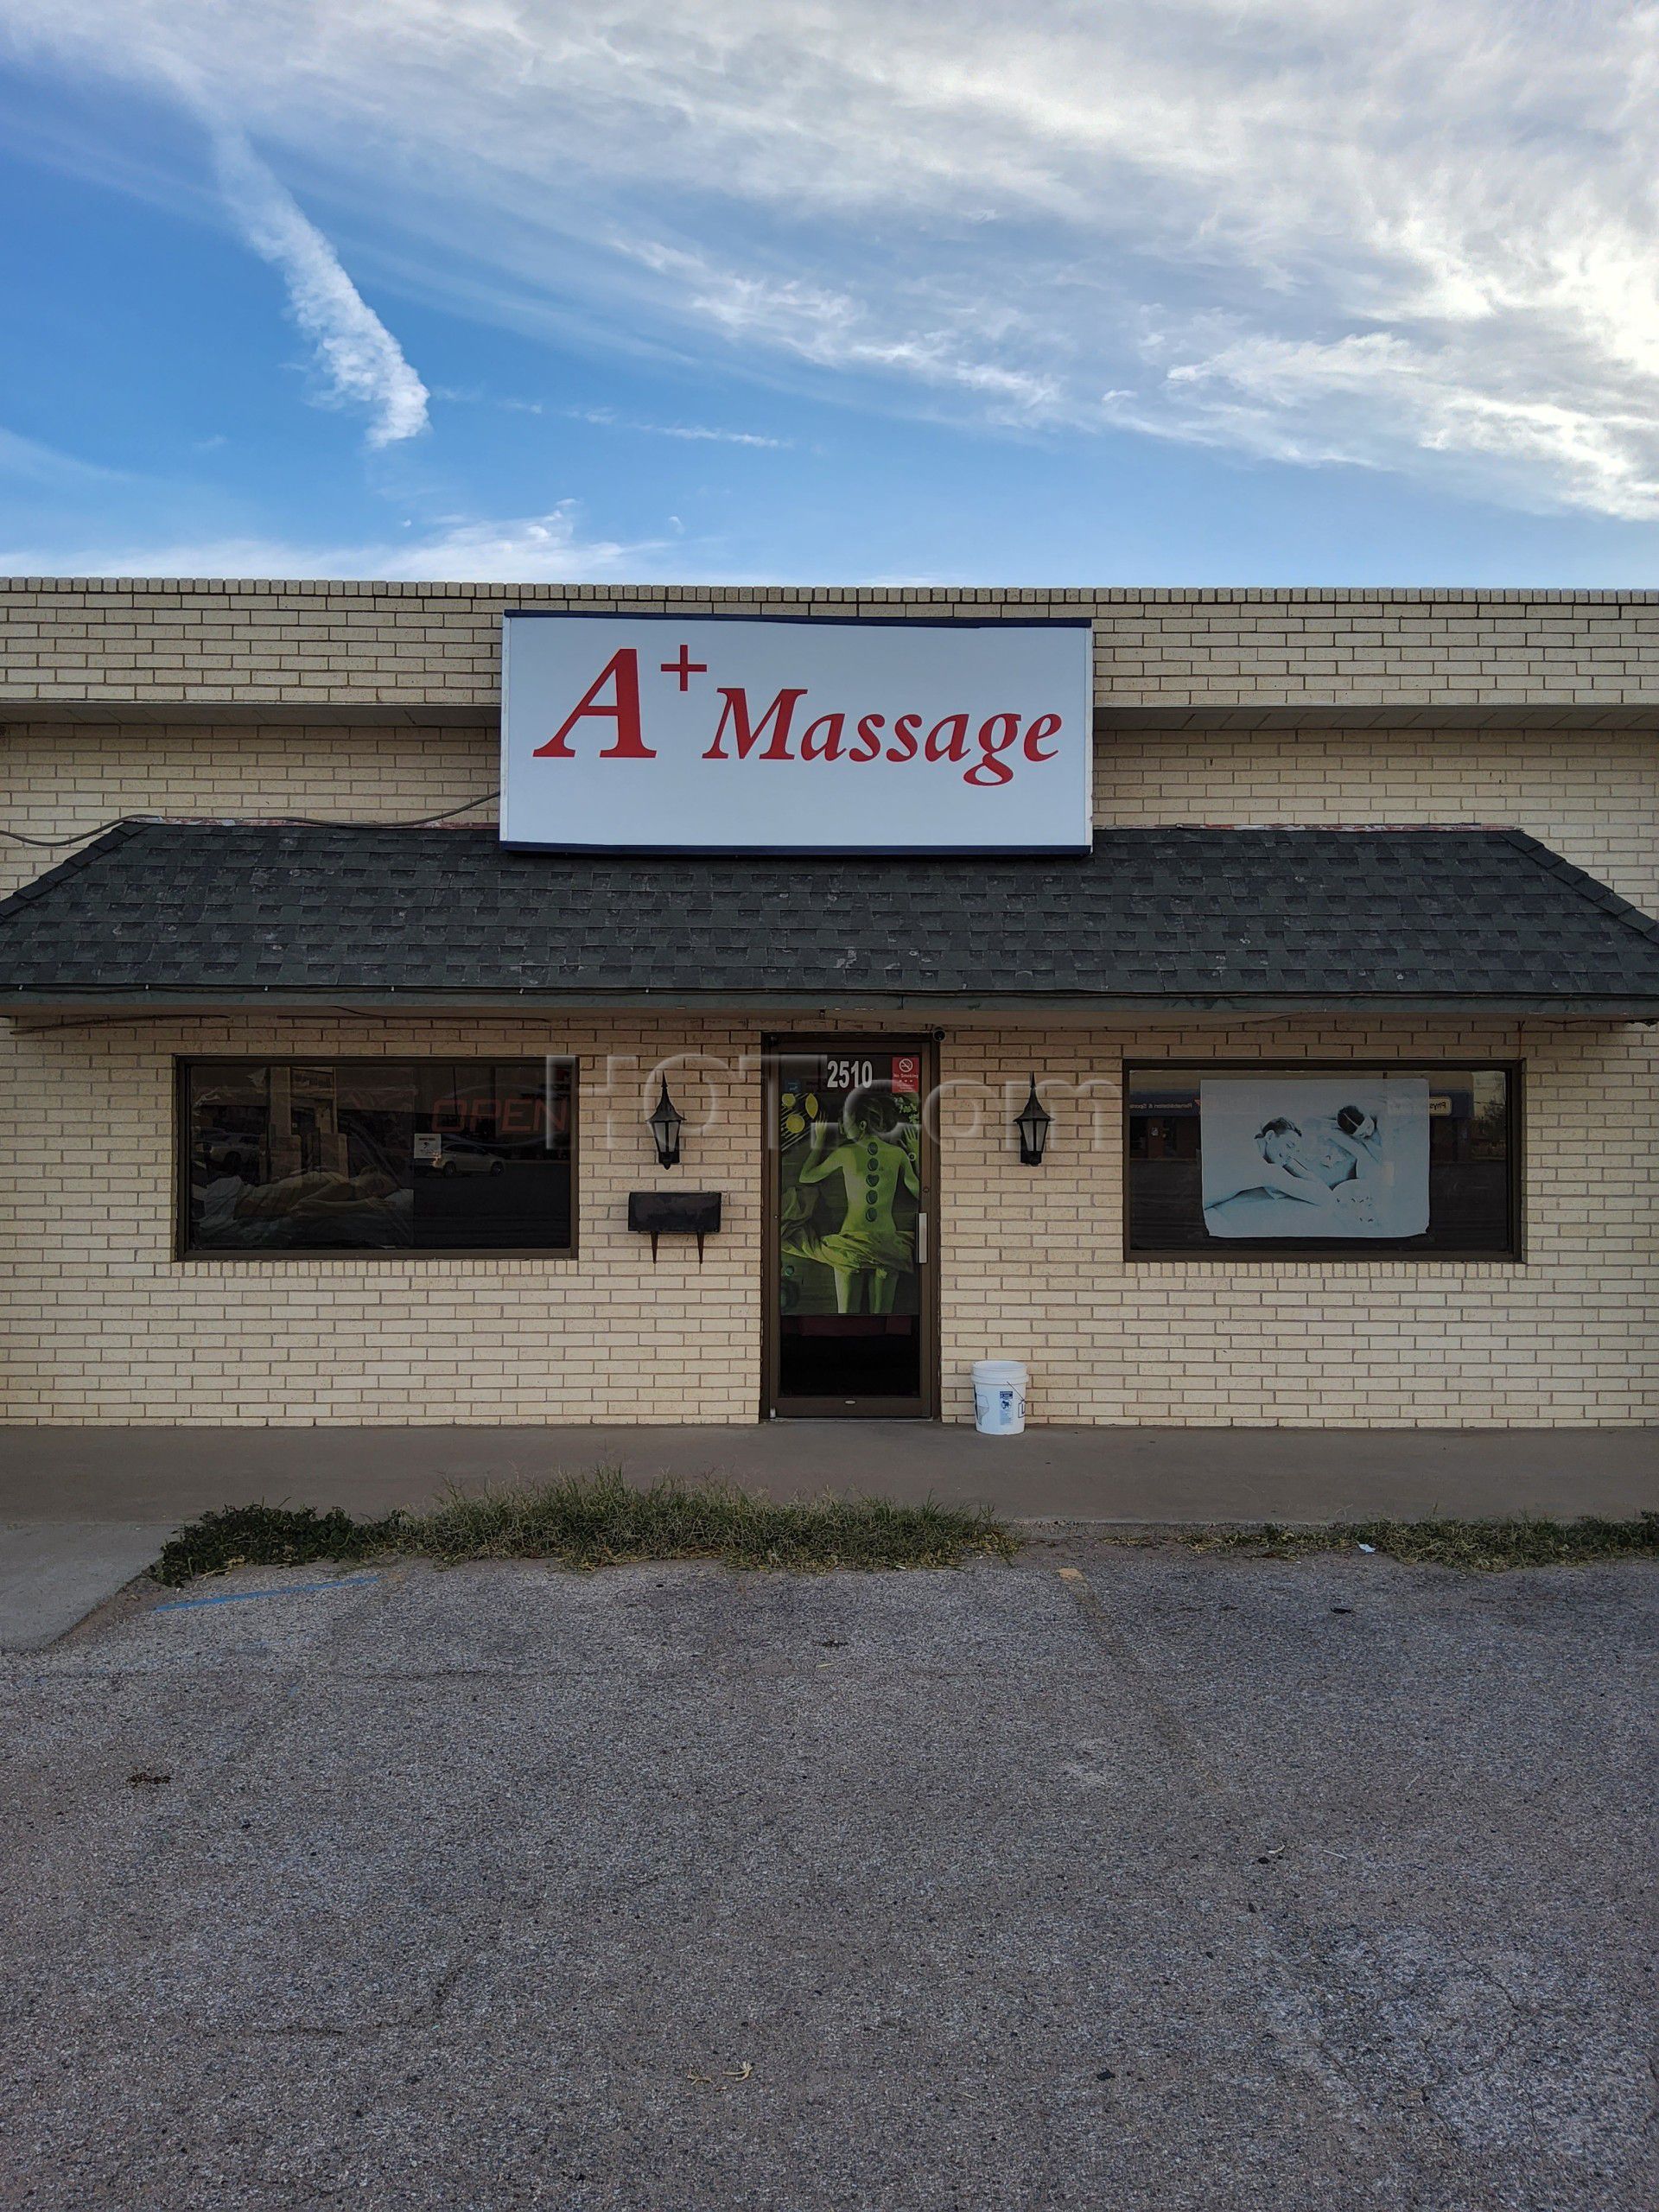 Odessa, Texas A+ Massage